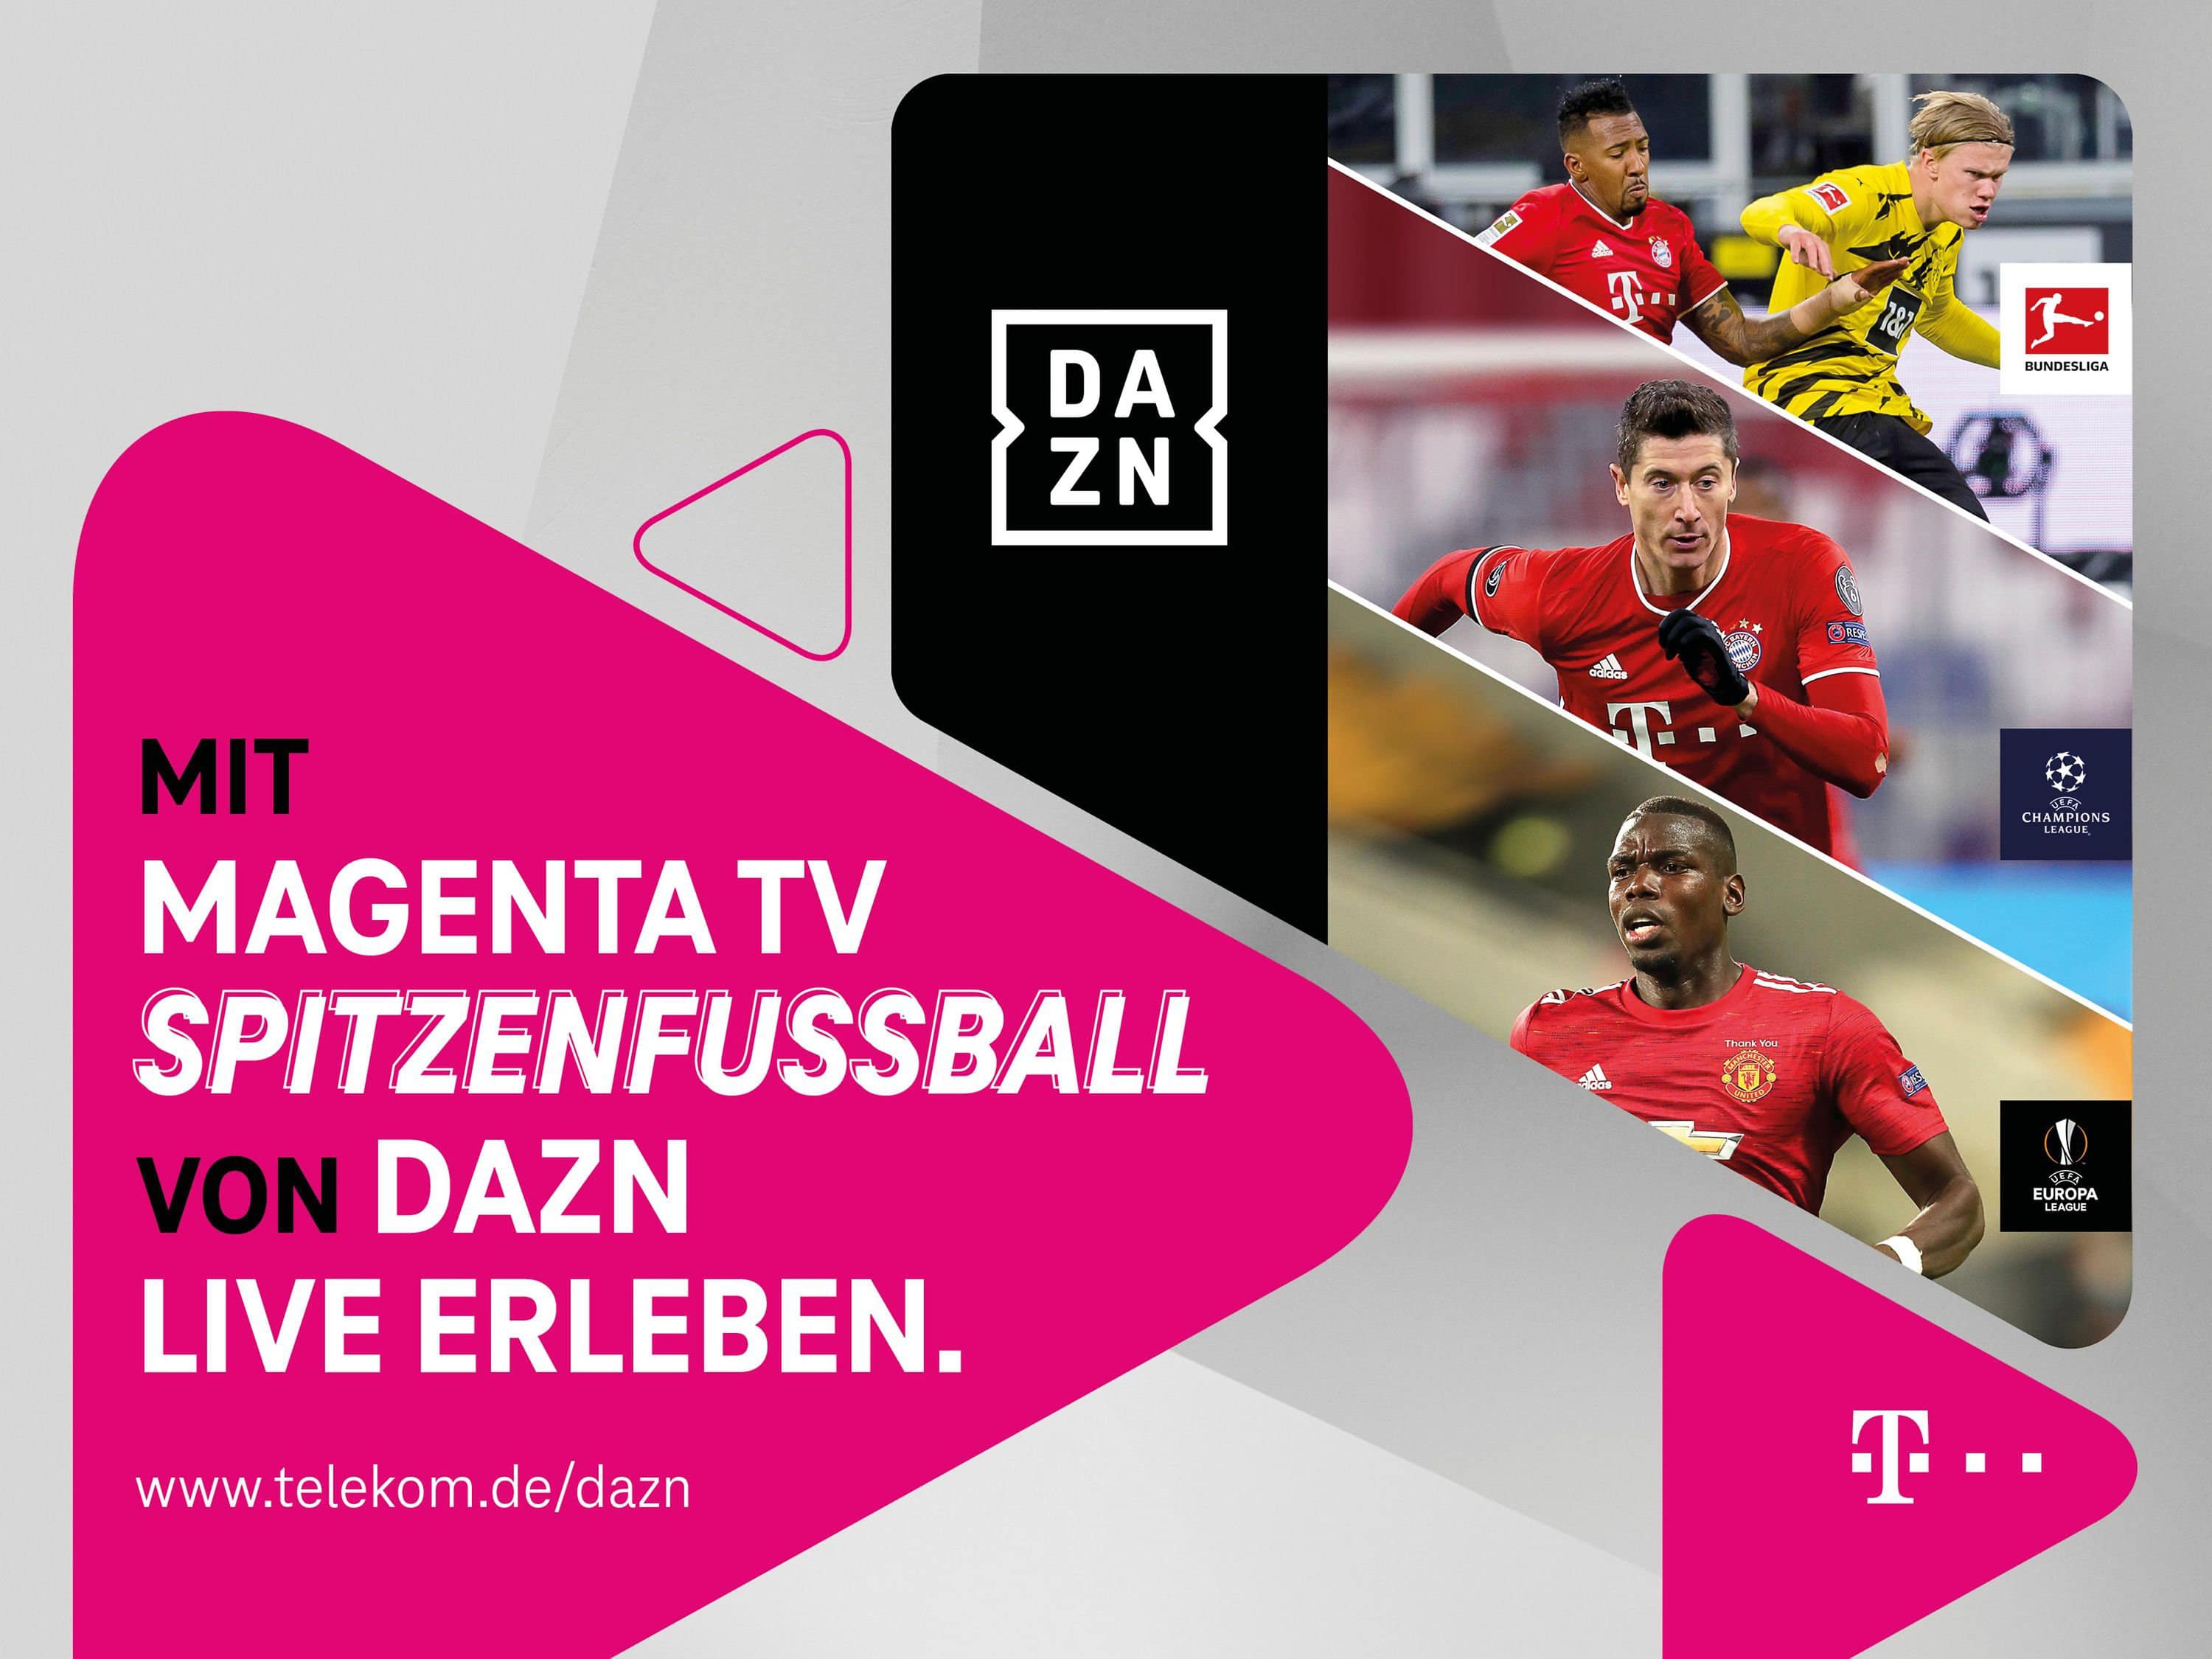 DAZN and MagentaTV Kooperation verlängert + Preisvorteile für gemeinsame Kunden